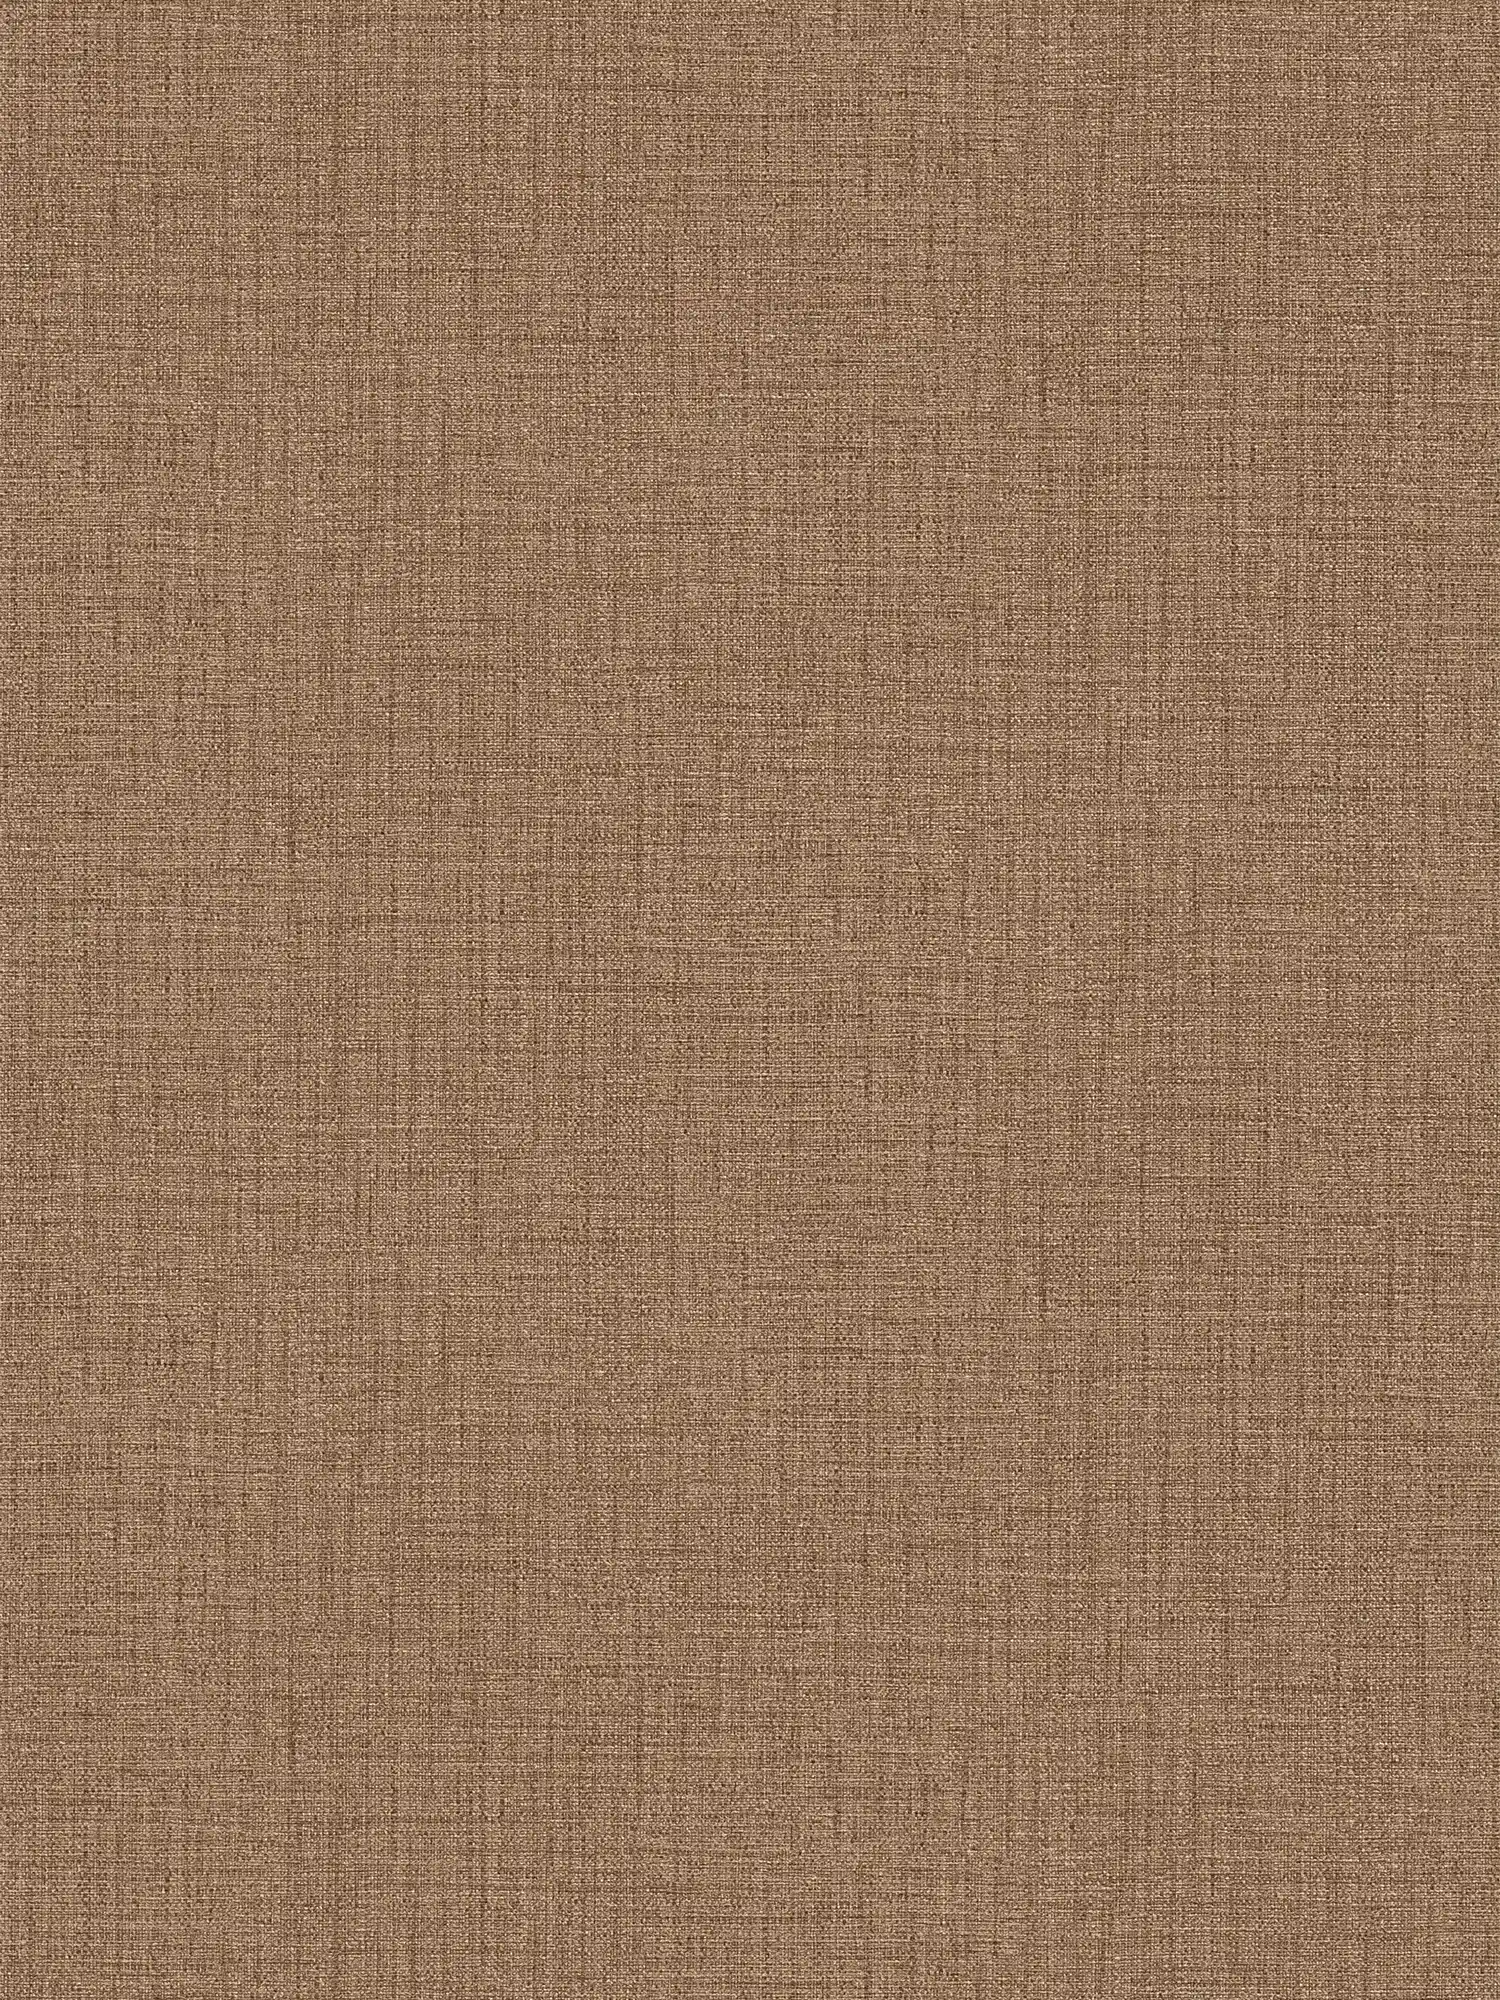 Papel pintado no tejido de color marrón con aspecto textil y diseño de estructura
